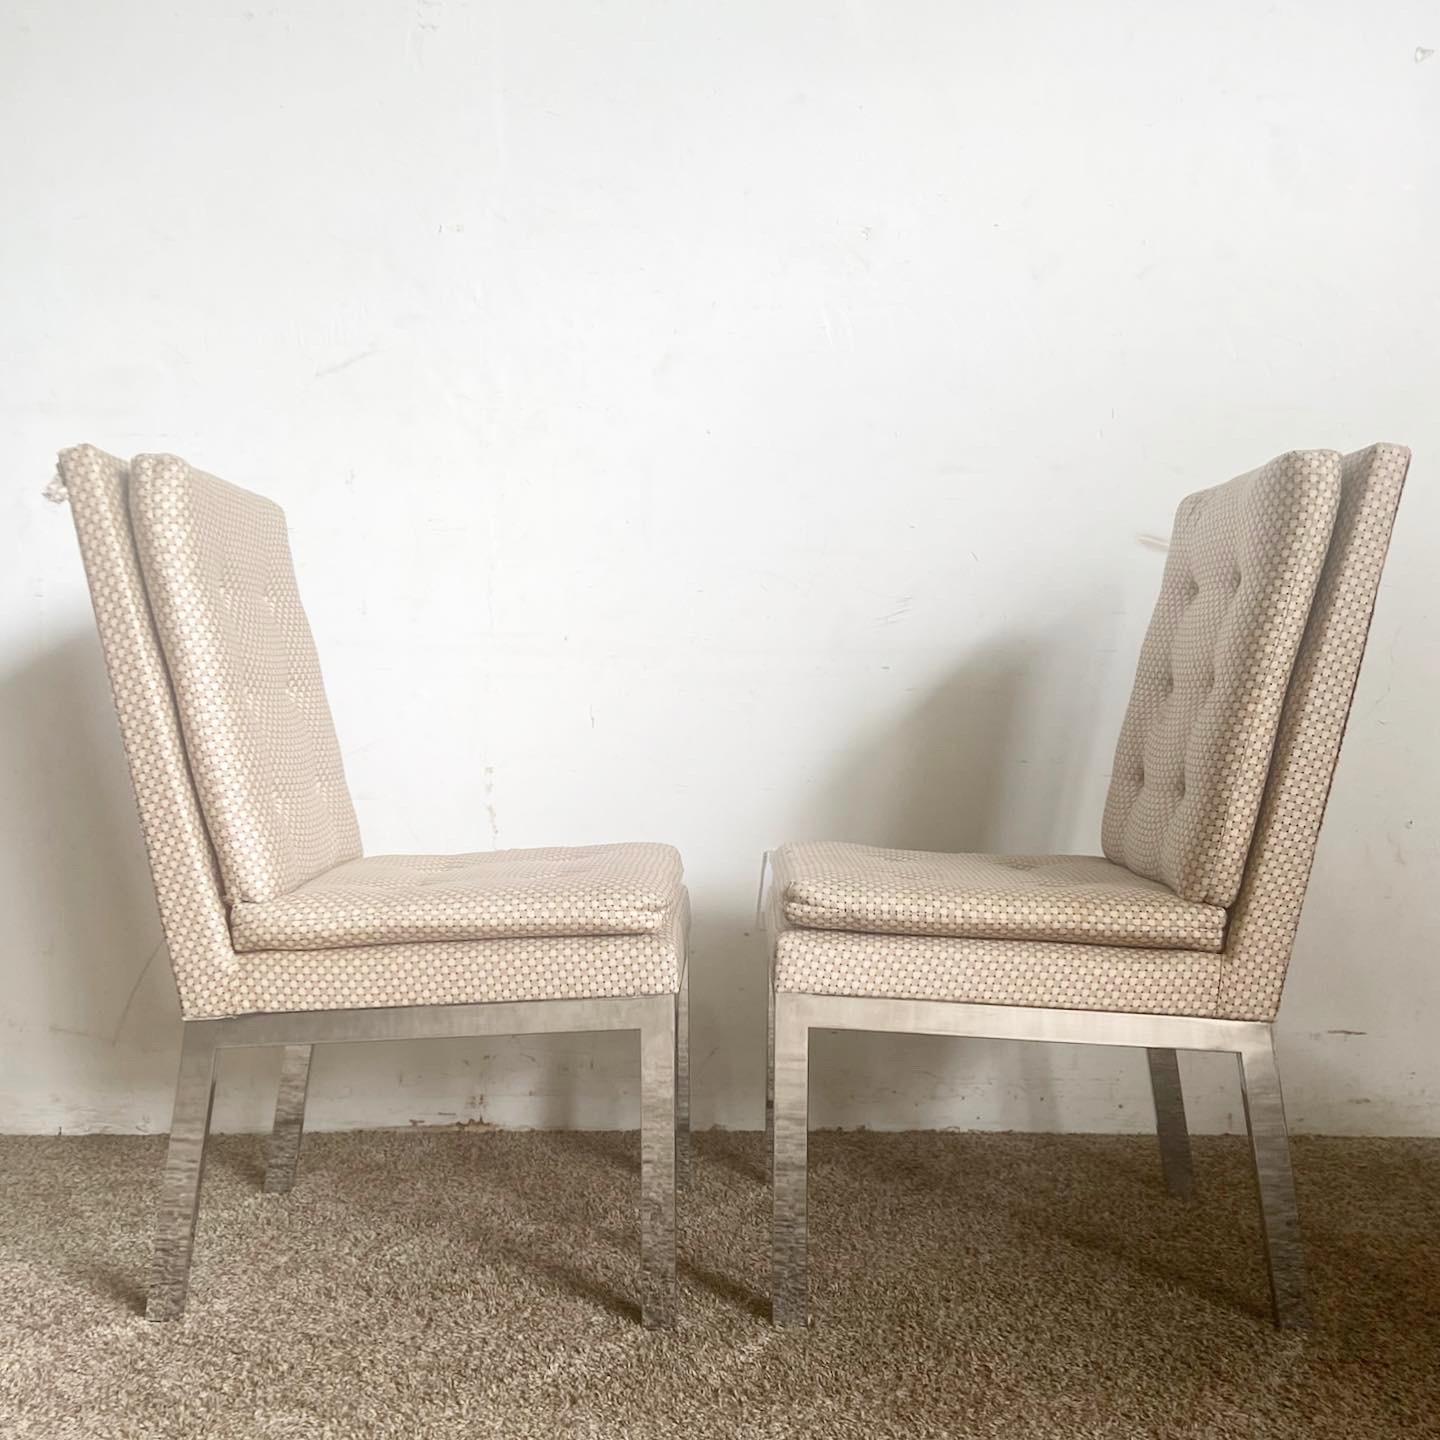 Découvrez la fusion du style et du confort avec les chaises DIA Chrome Tufted. Cet ensemble de 4 chaises de salle à manger Mid-Century Modern de Design Institute of America associe des châssis chromés élégants à un tissu touffeté cossu, incarnant